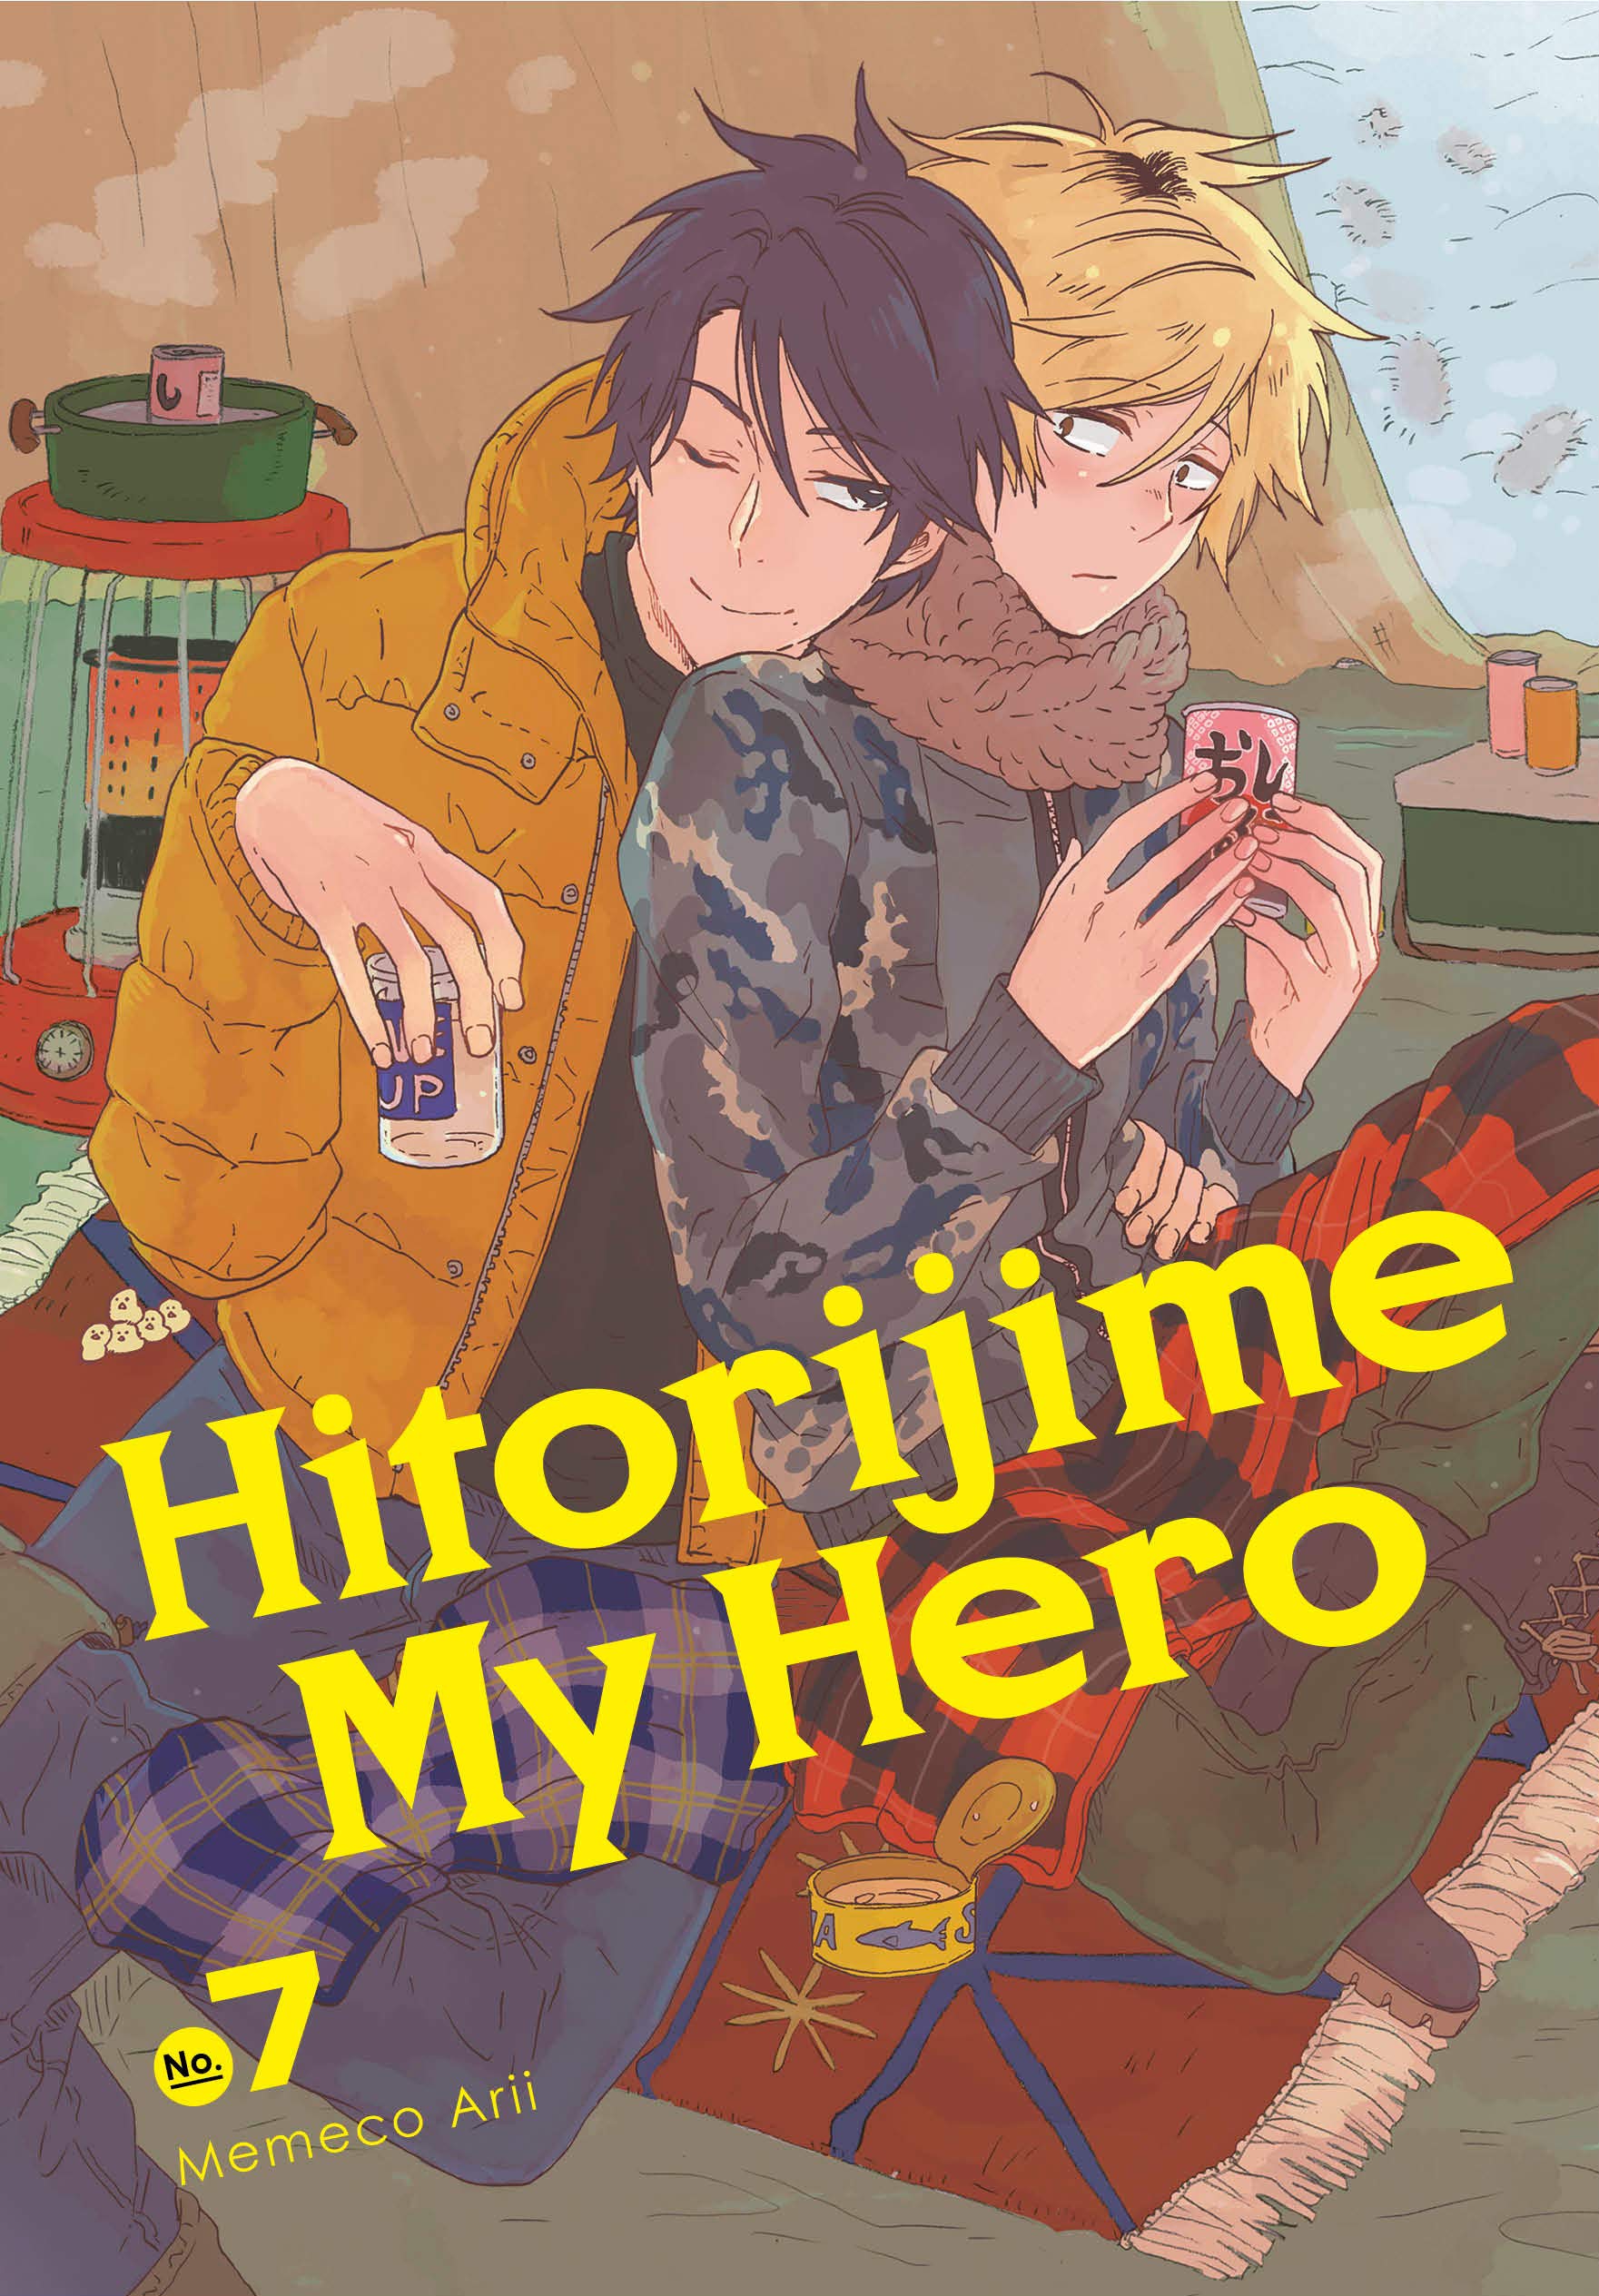 Hitorijime My Hero 7 | Memeco Arii